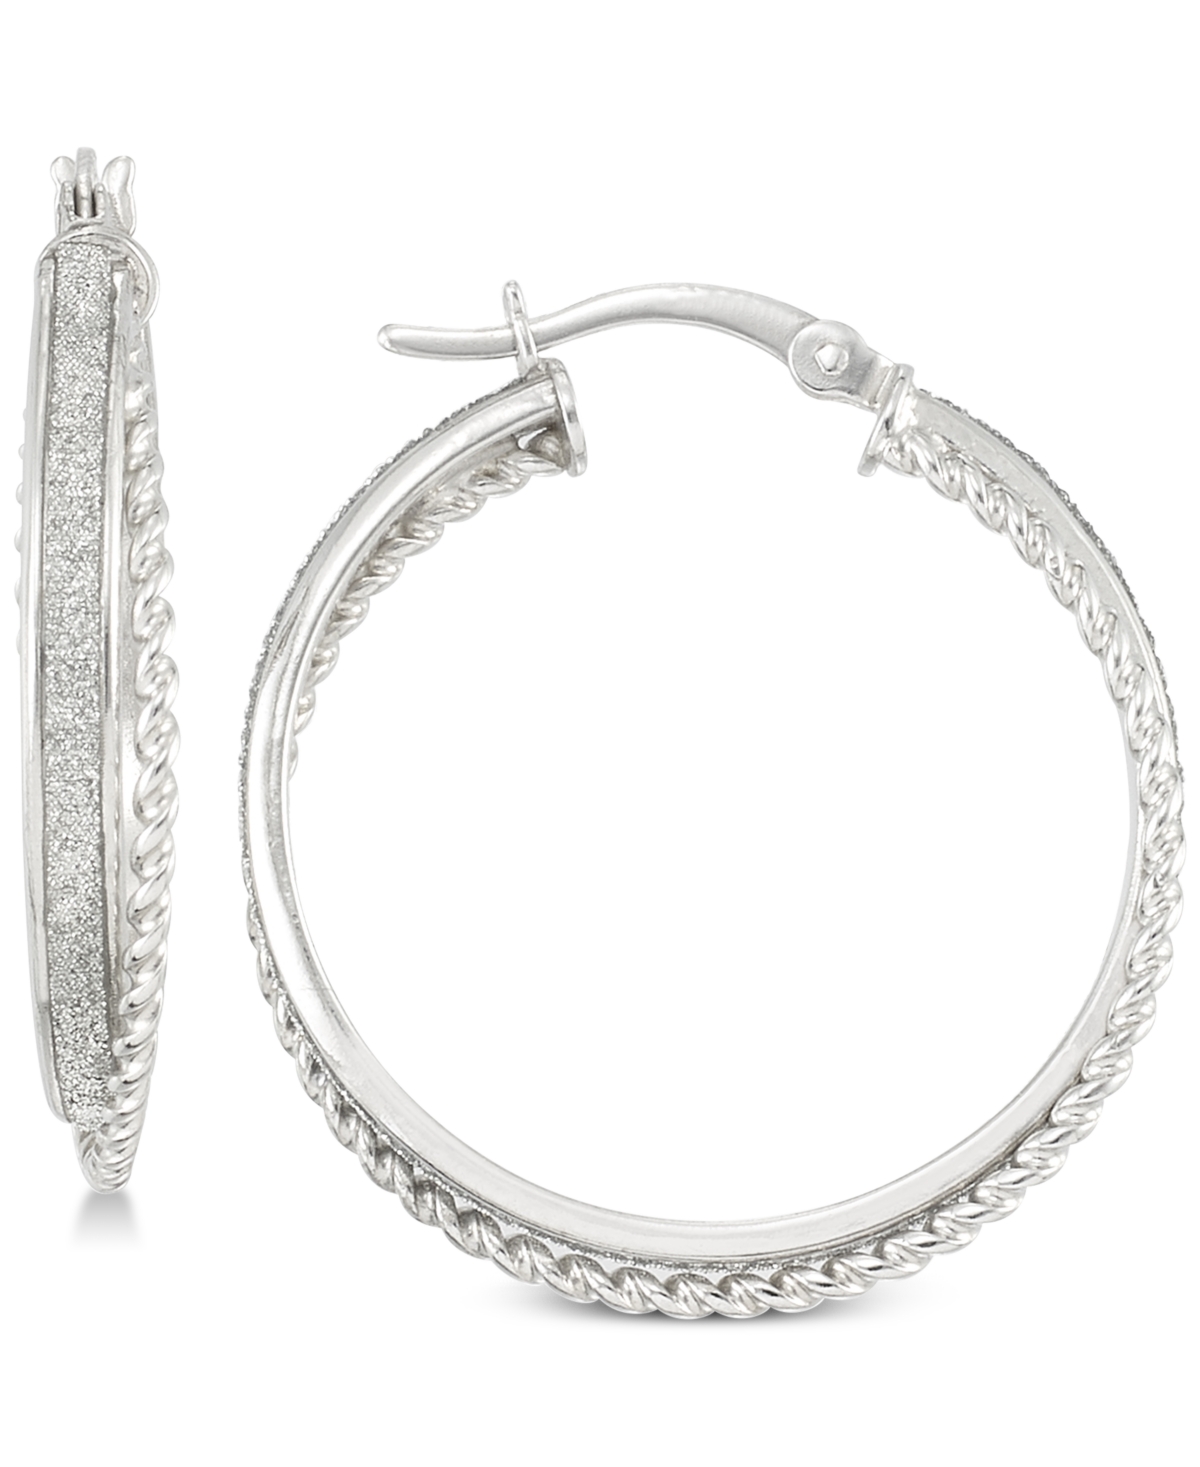 Glitter Twist Hoop Earrings in Sterling Silver - Silver